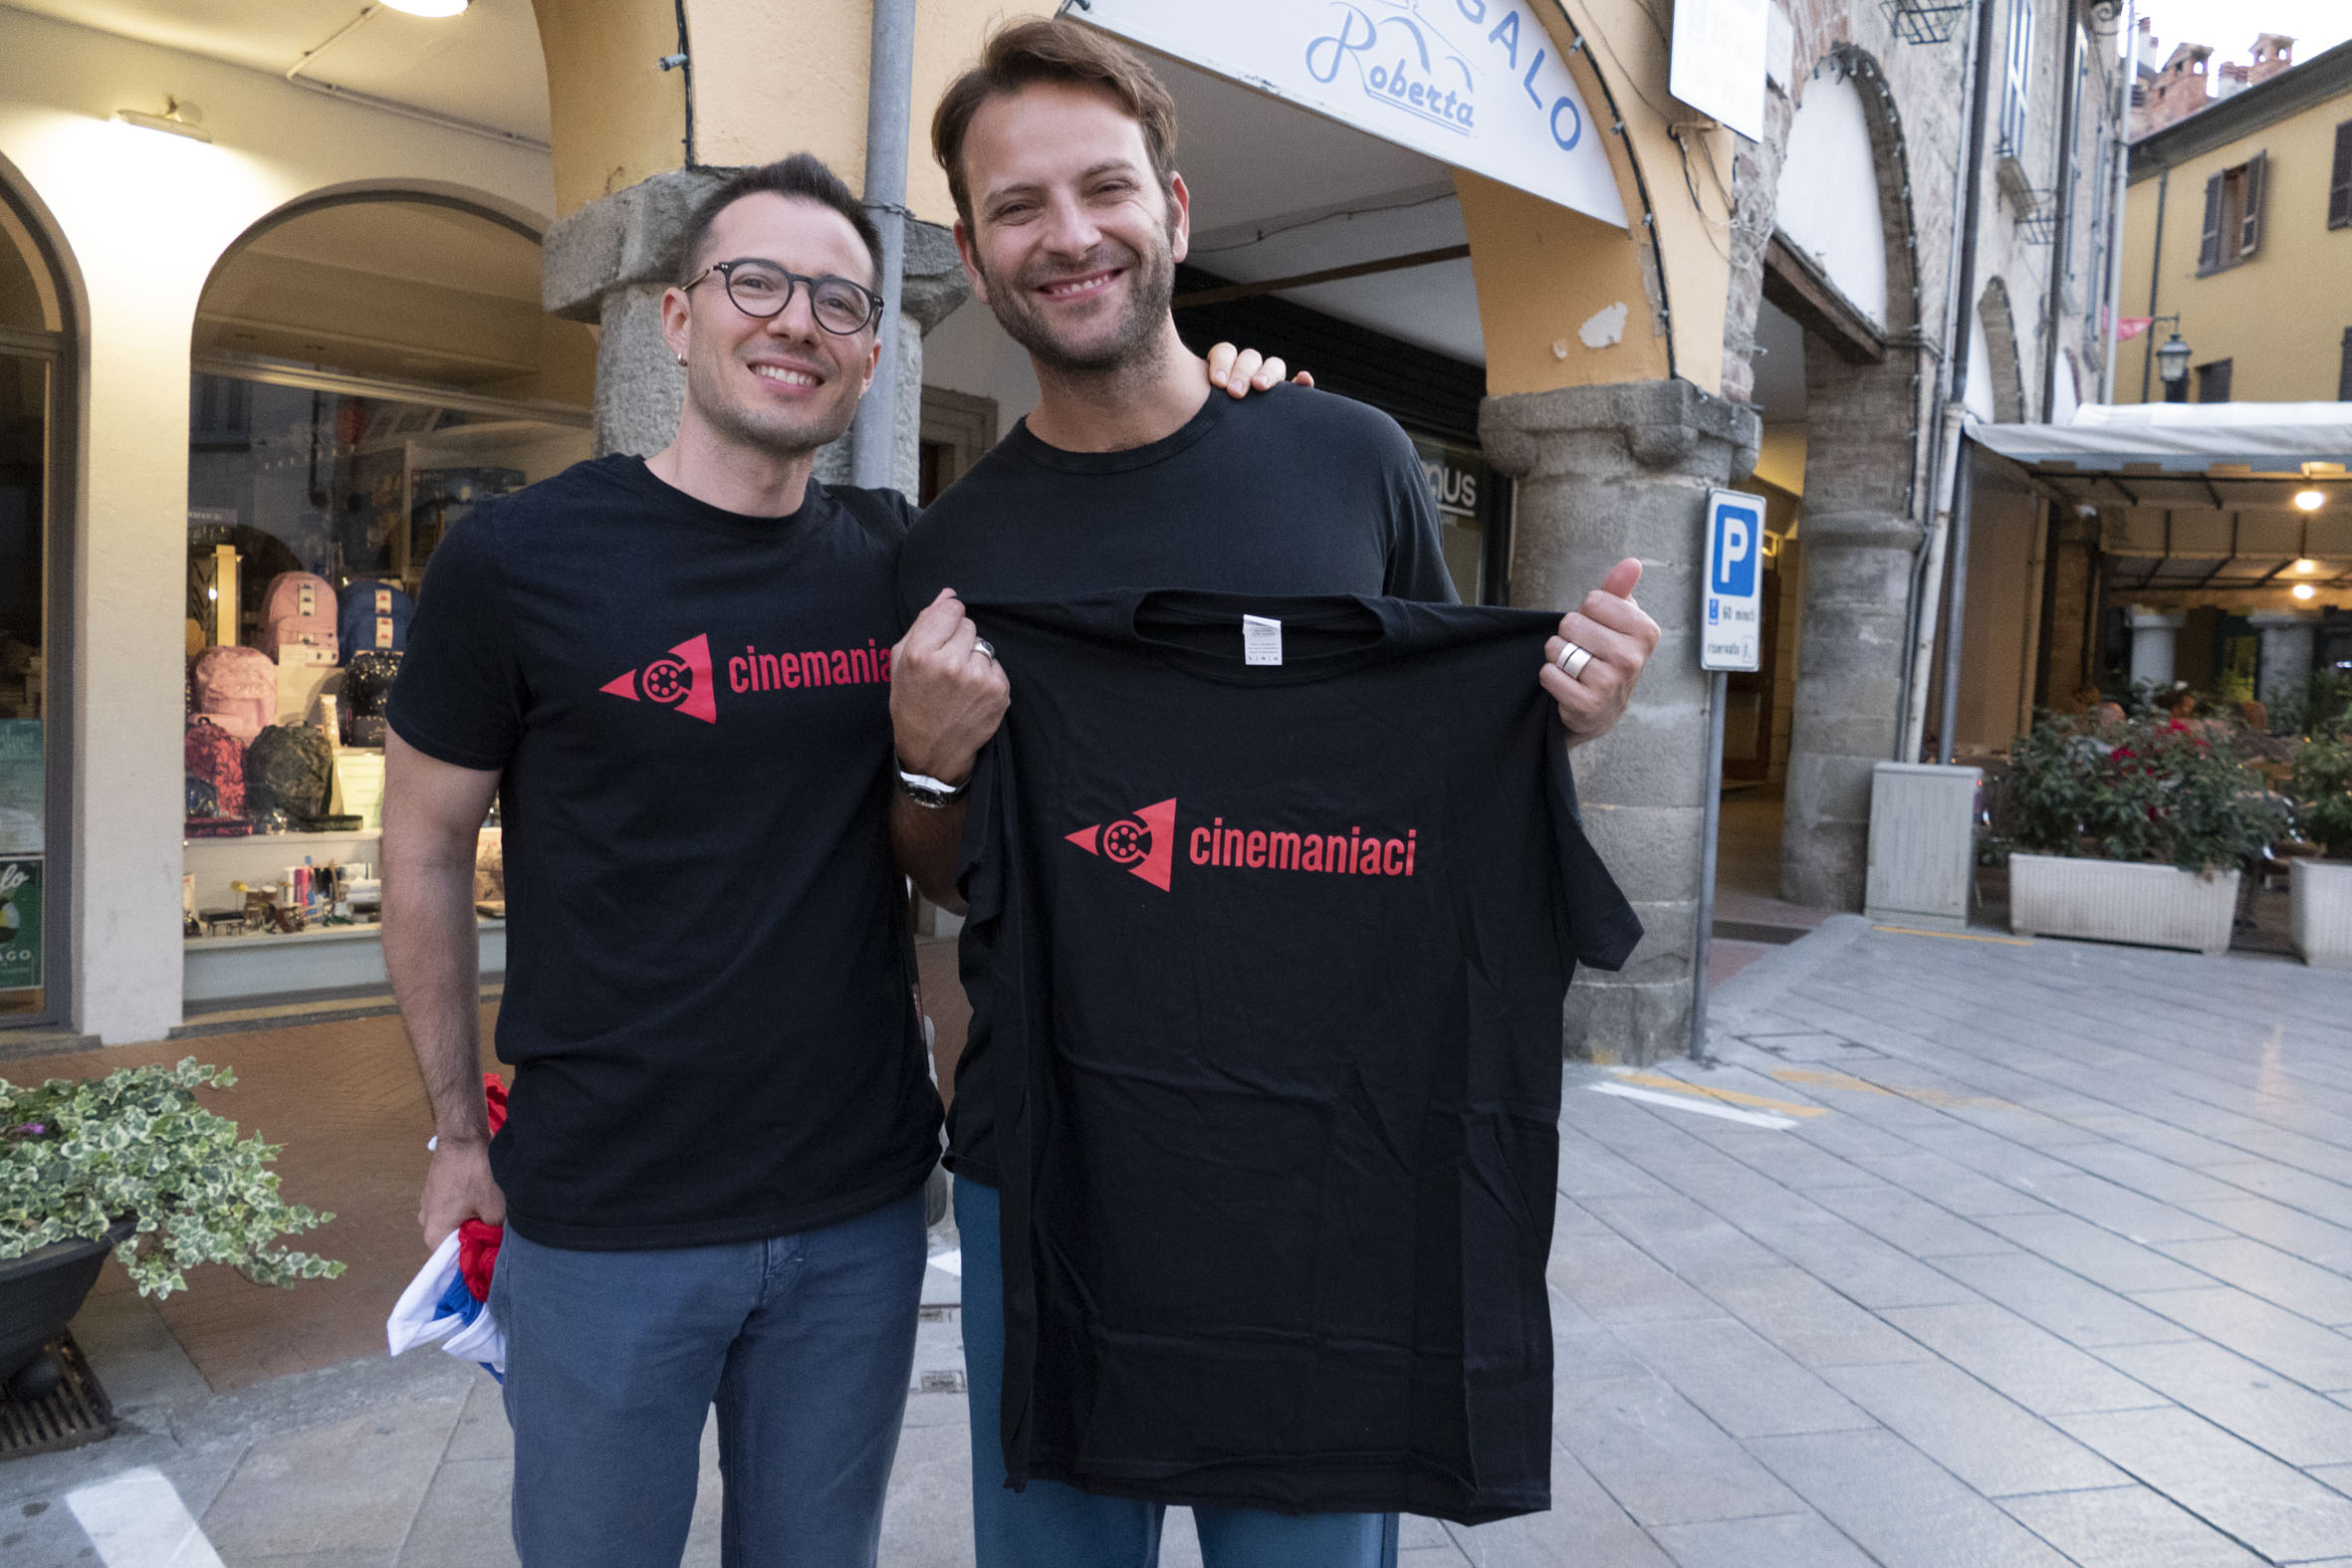 Alessandro Borghi con la maglietta e il presidente di Cinemaniaci Piero Verani